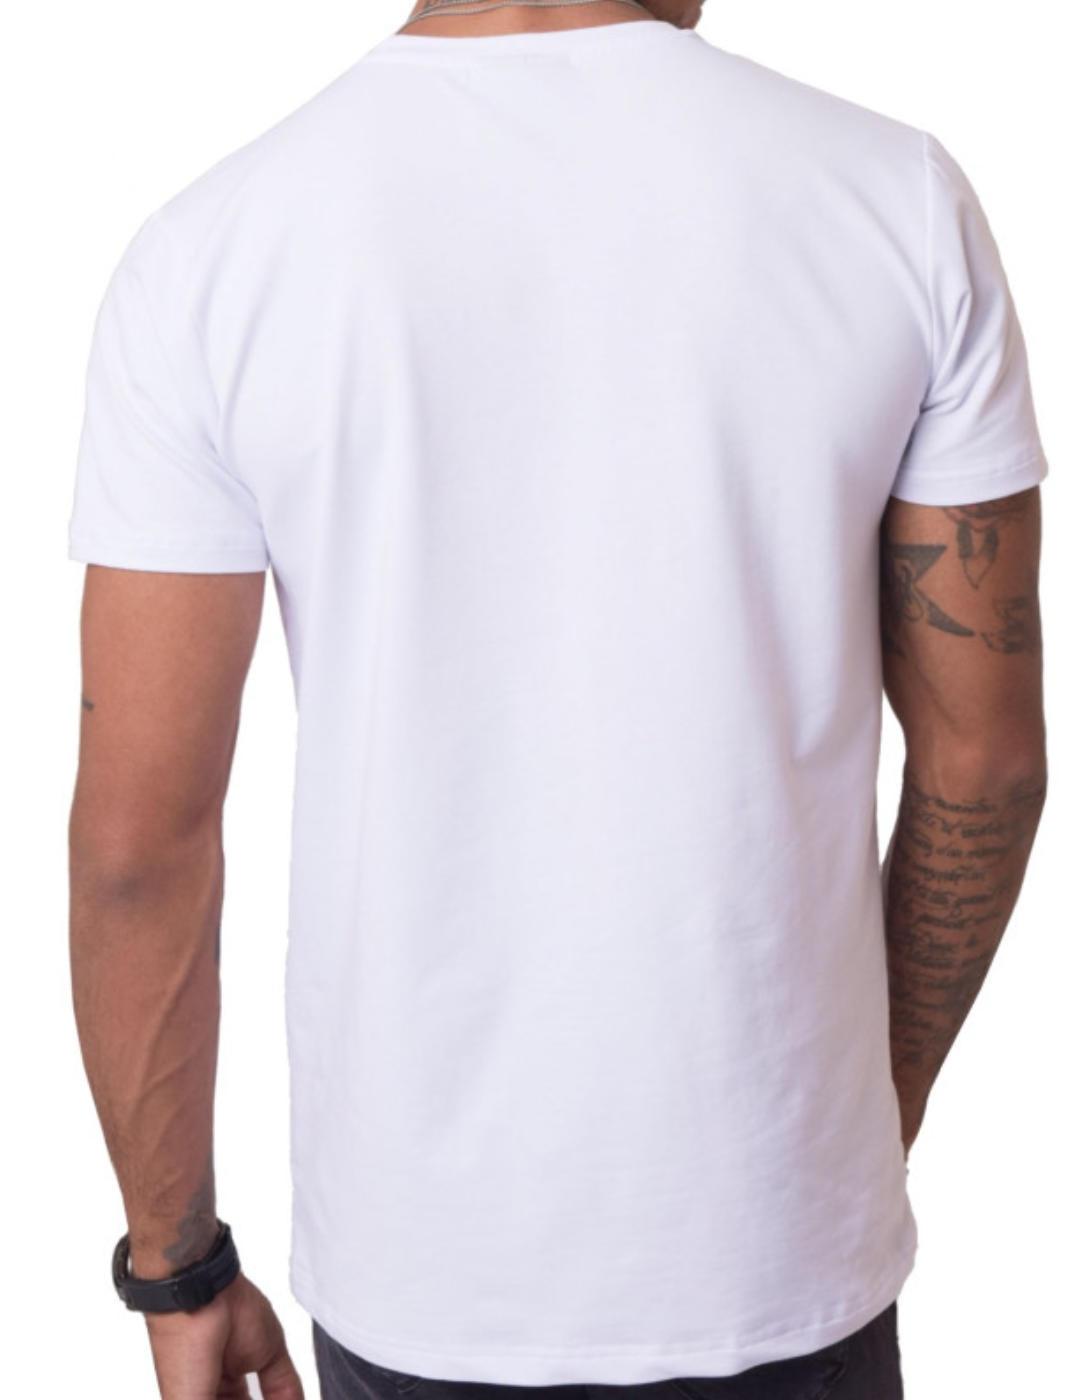 Camiseta ProjectxParis blanca logo negro manga corta unisex